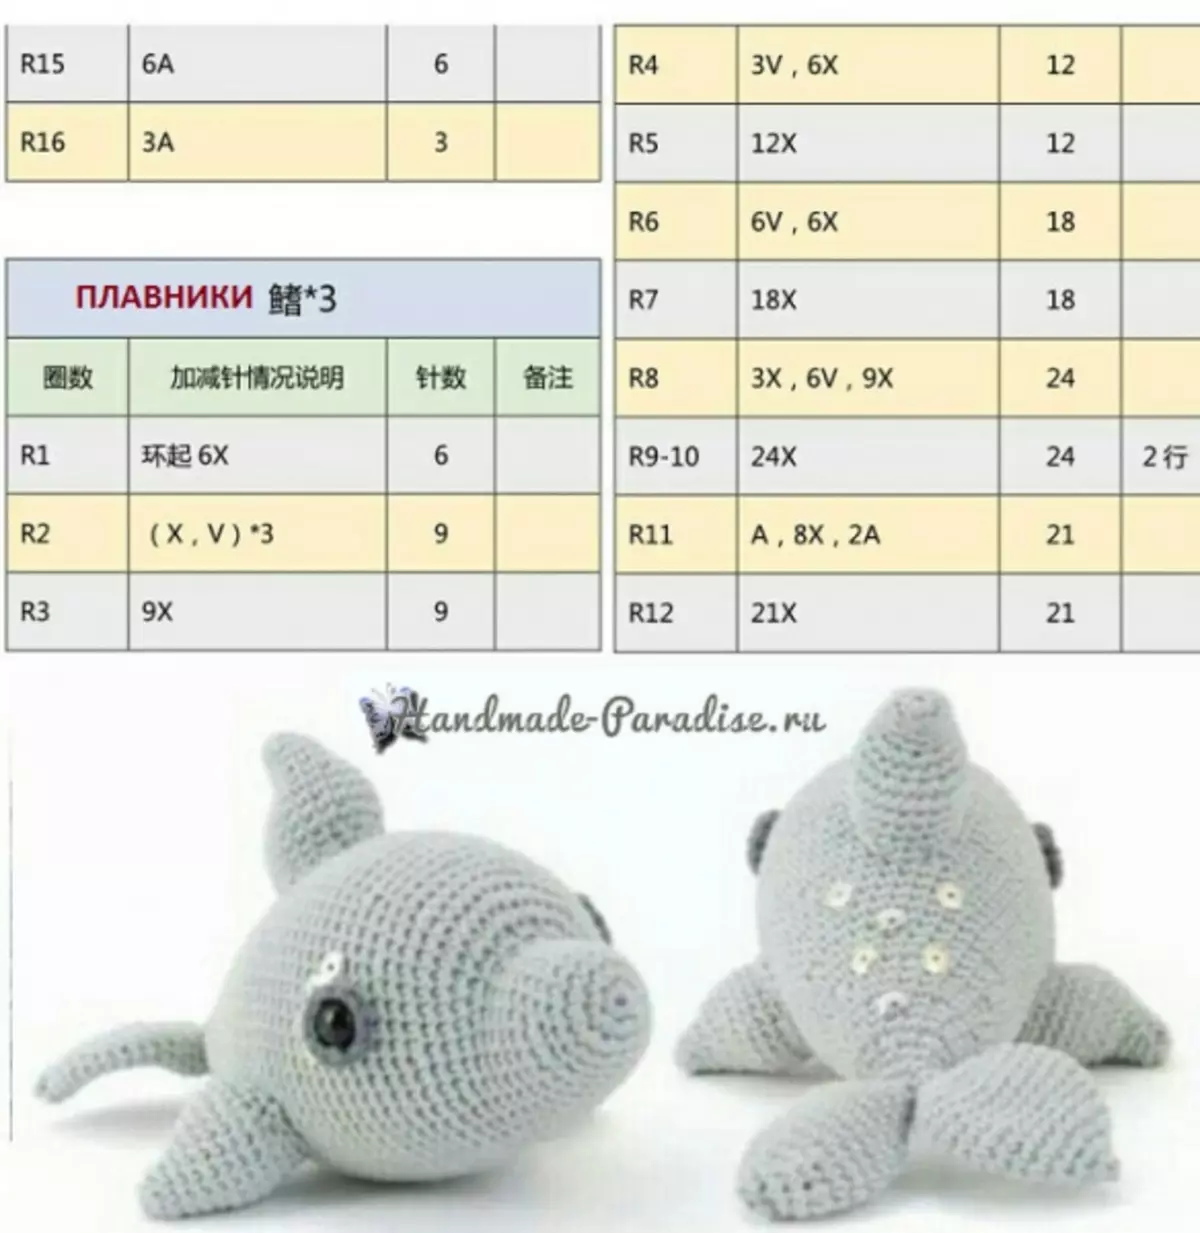 Dolphin Crochet. Kufotokozera za kuluka